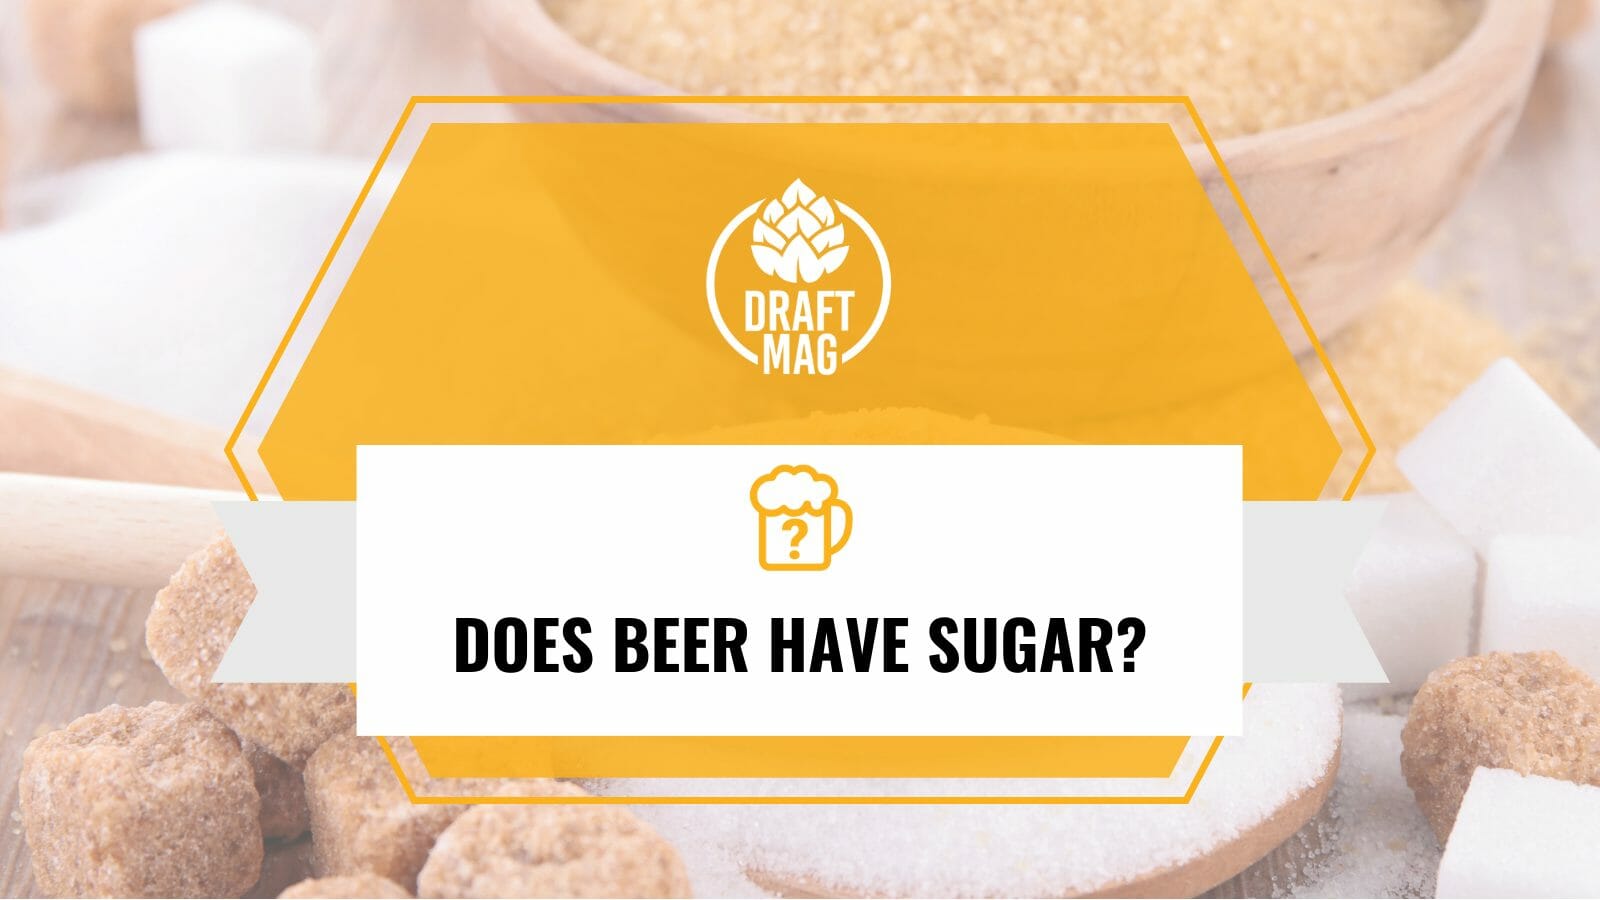 Does beer have sugar